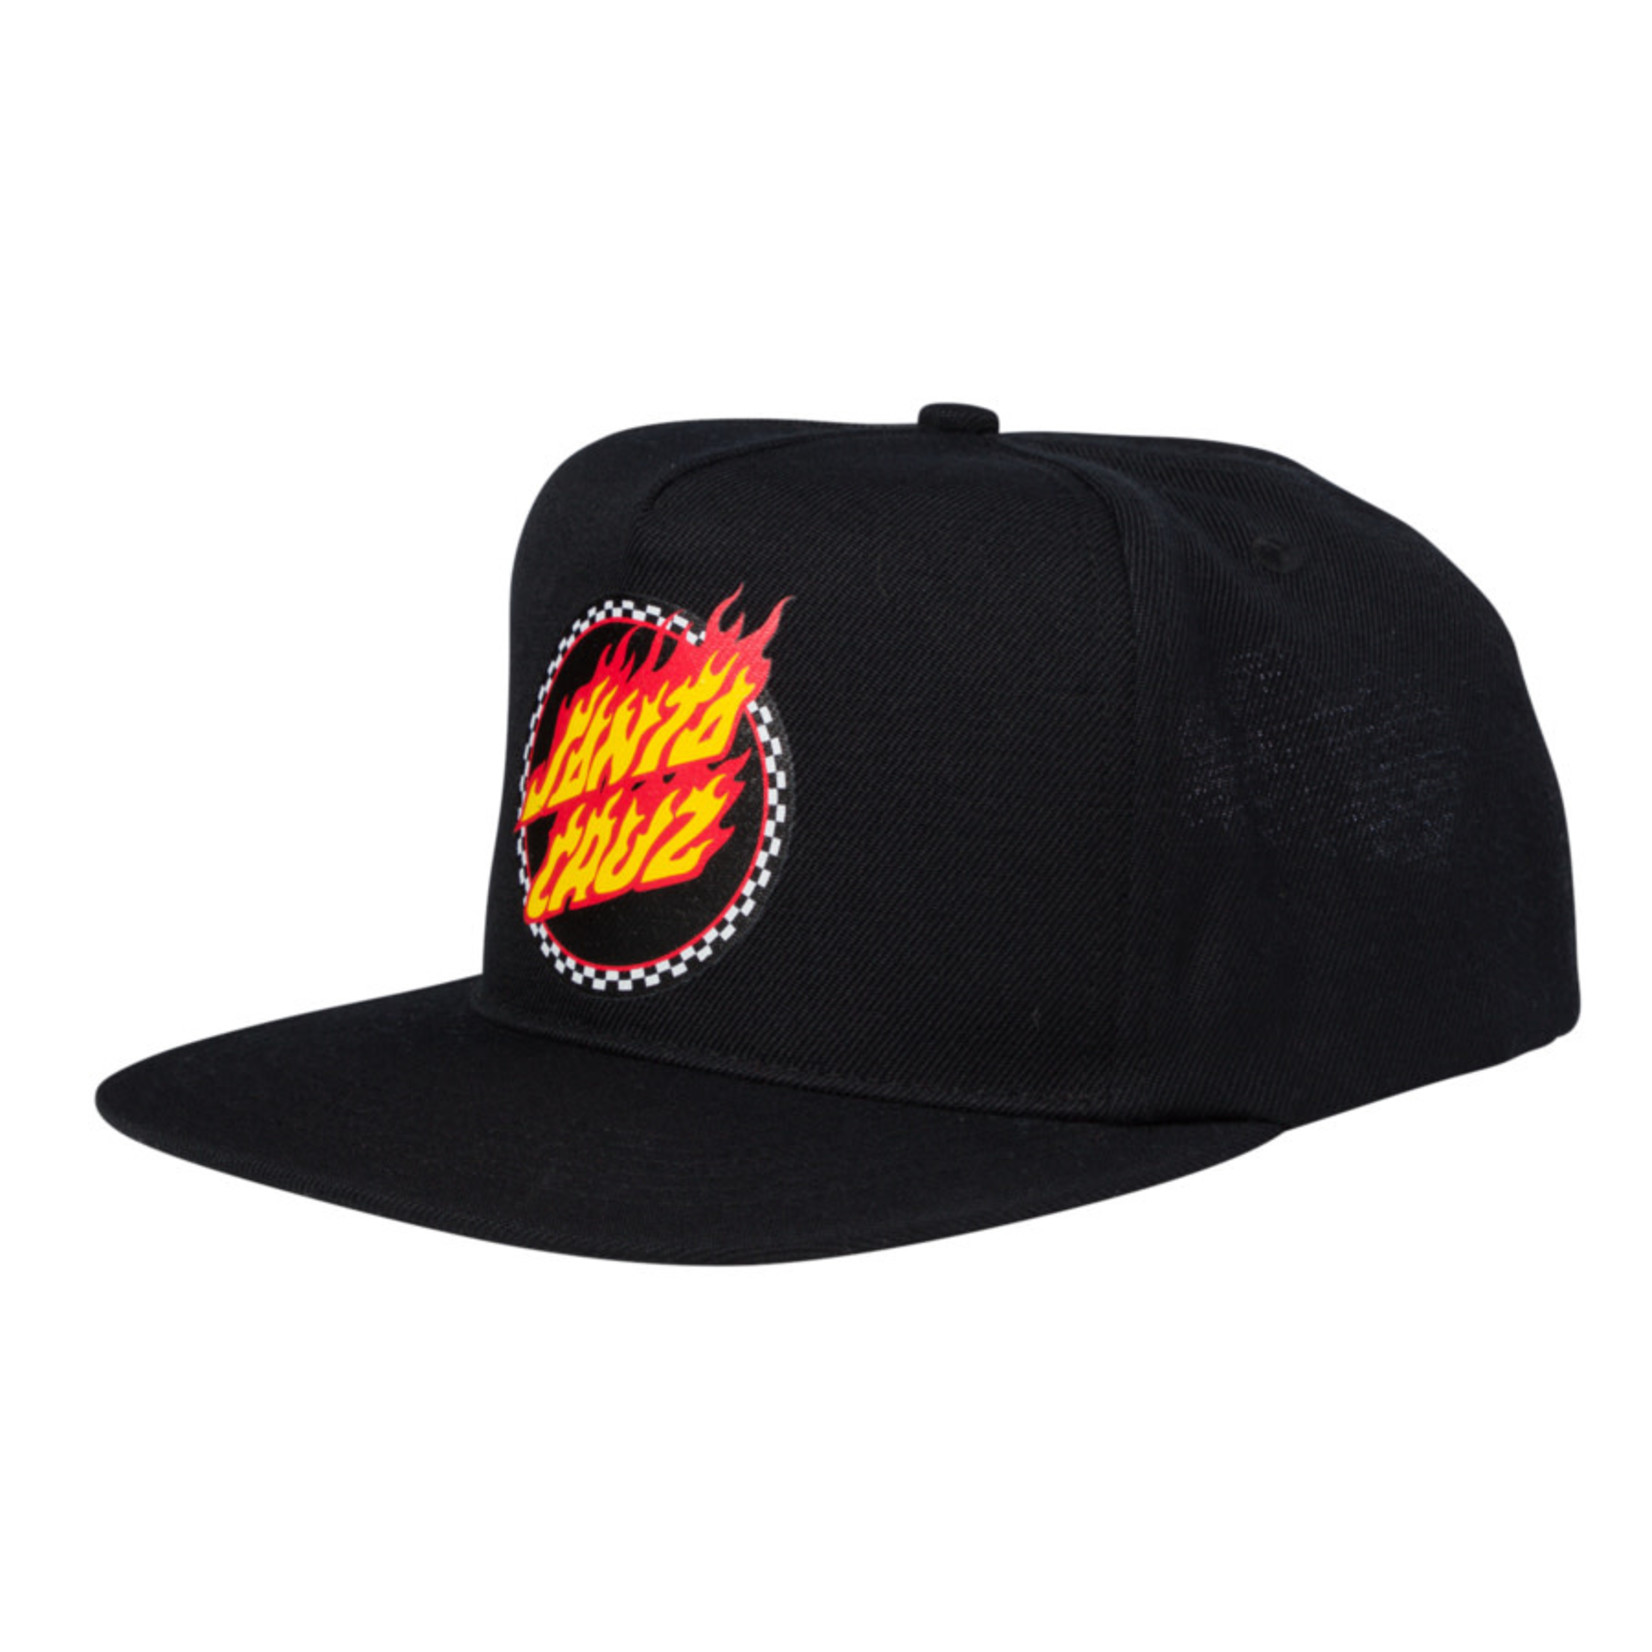 Santa Cruz Skateboards Santa Cruz Check Ringed Flamed Dot Mid Profile Snapback Hat - Black